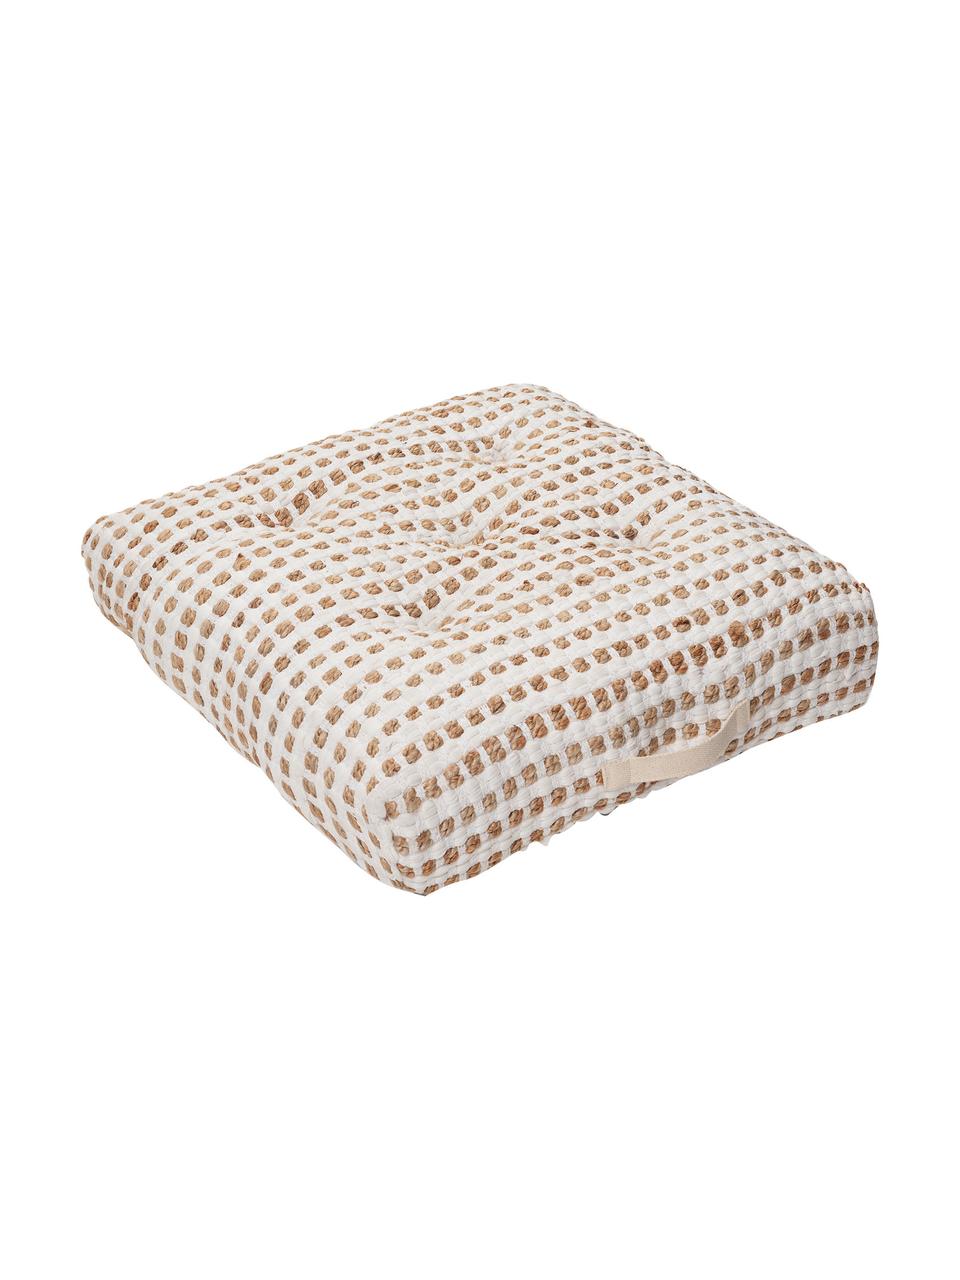 Poduszka podłogowa z bawełny/juty w stylu boho Fiesta, Tapicerka: 55% bawełna chindi, 45% j, Biały, beżowy, S 60 x W 13 cm